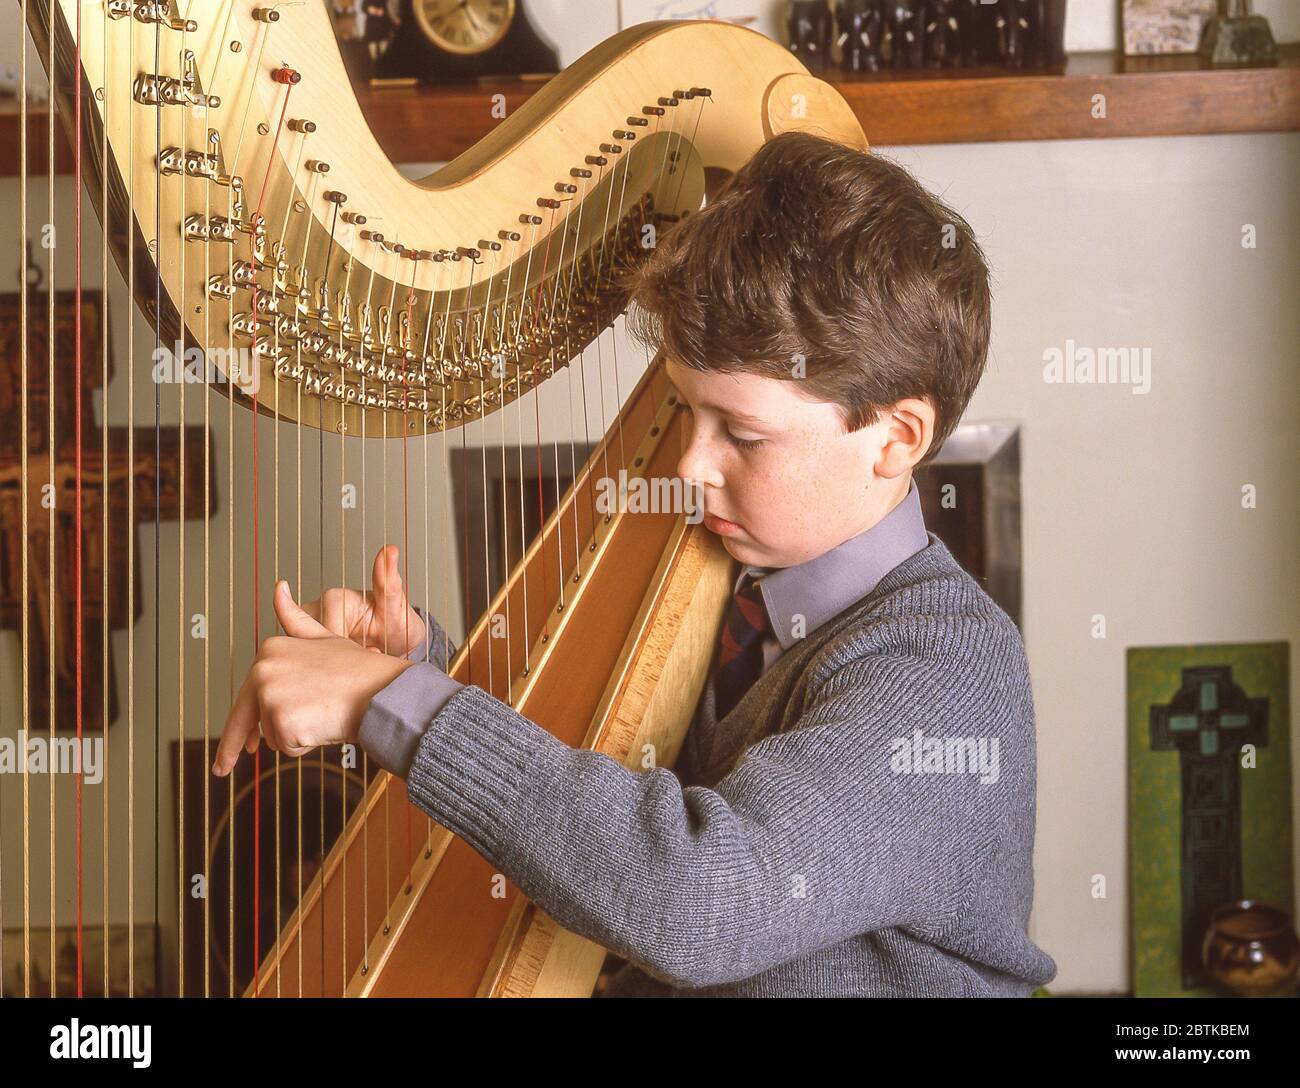 Scolaro che suona lo strumento musicale dell'arpa a scuola, Surrey, Inghilterra, Regno Unito Foto Stock